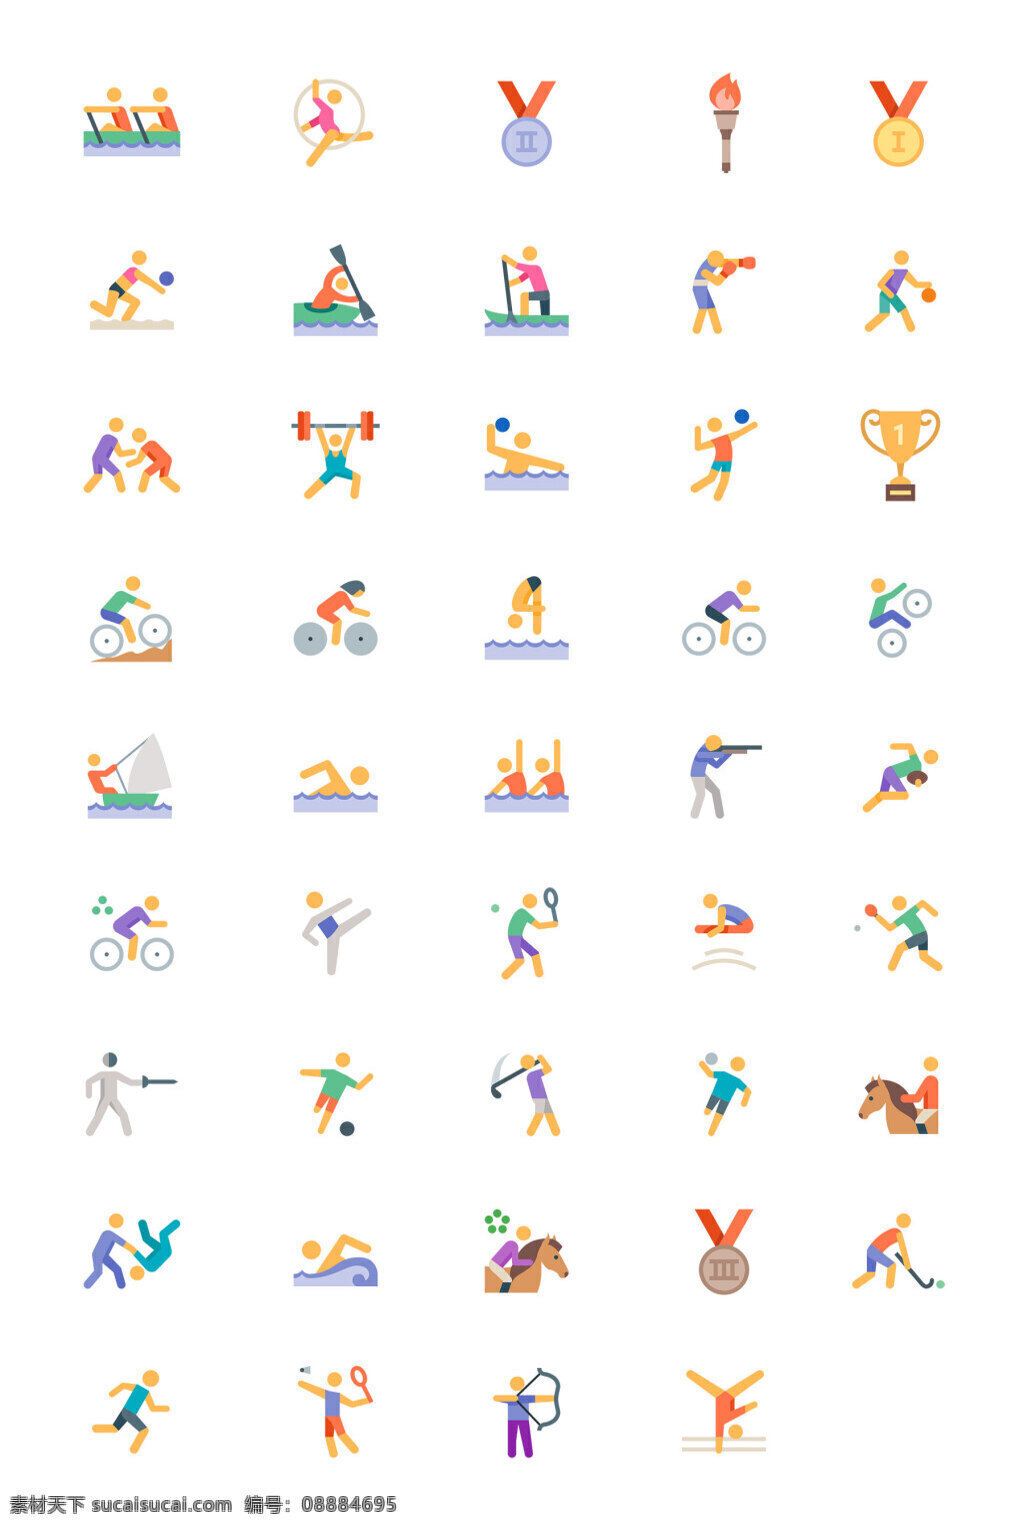 枚 奥运 项目 扁平 图标 ui图标 icon 创意图标 图标设计 举重 金牌 羽毛球 滑行 奖杯 击剑 跳水 轮滑